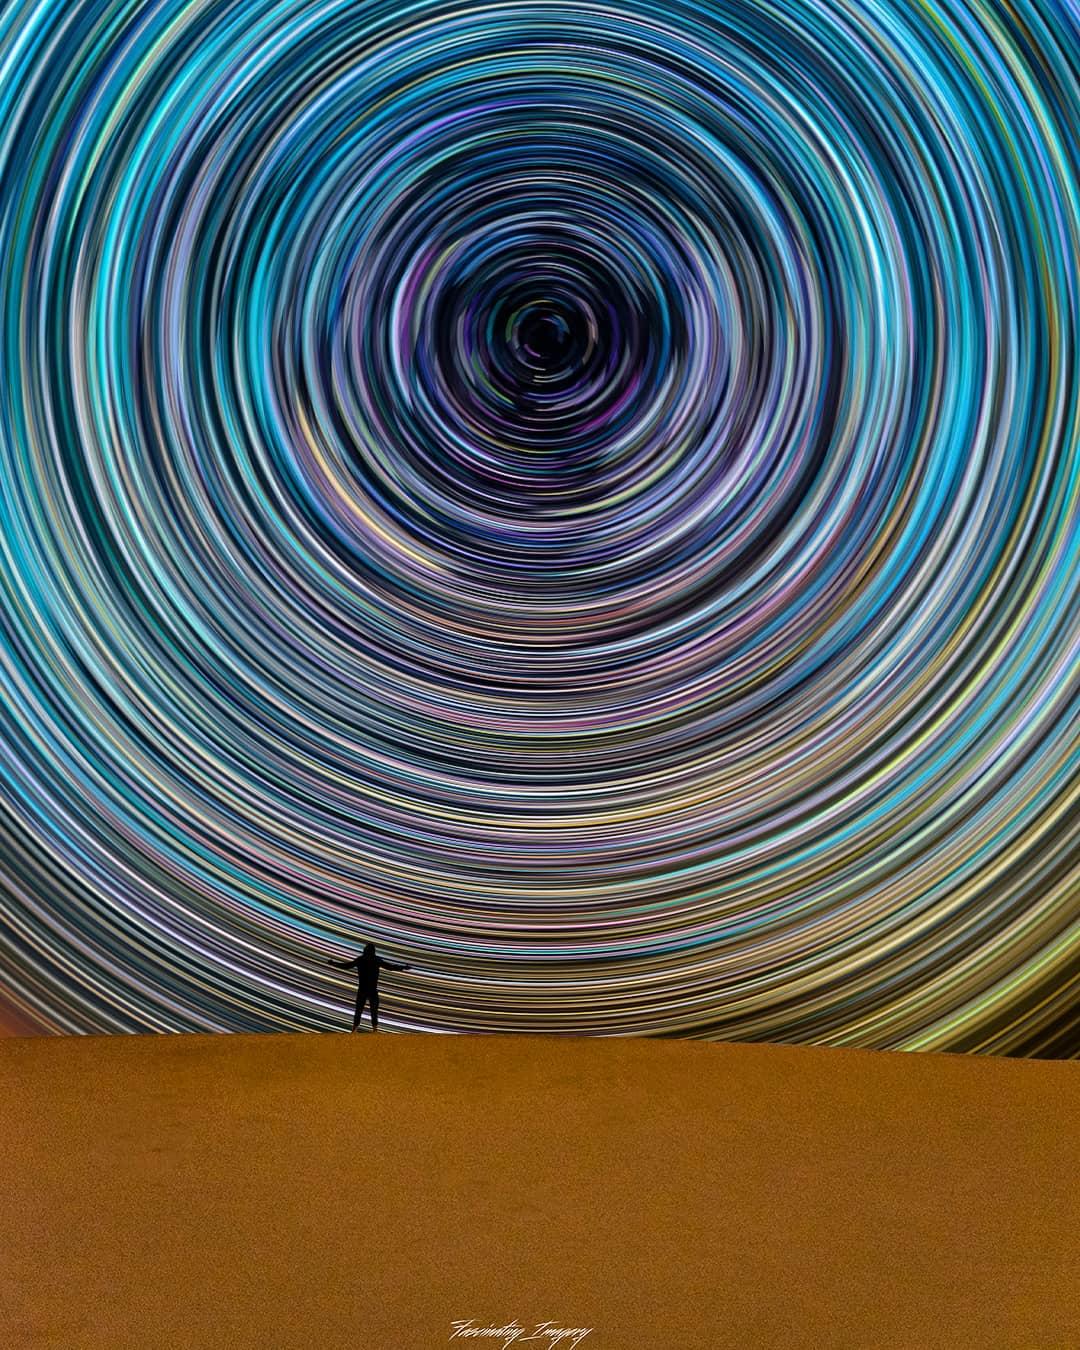  星轨与人，来自摄影师Fascinating Imagery。 